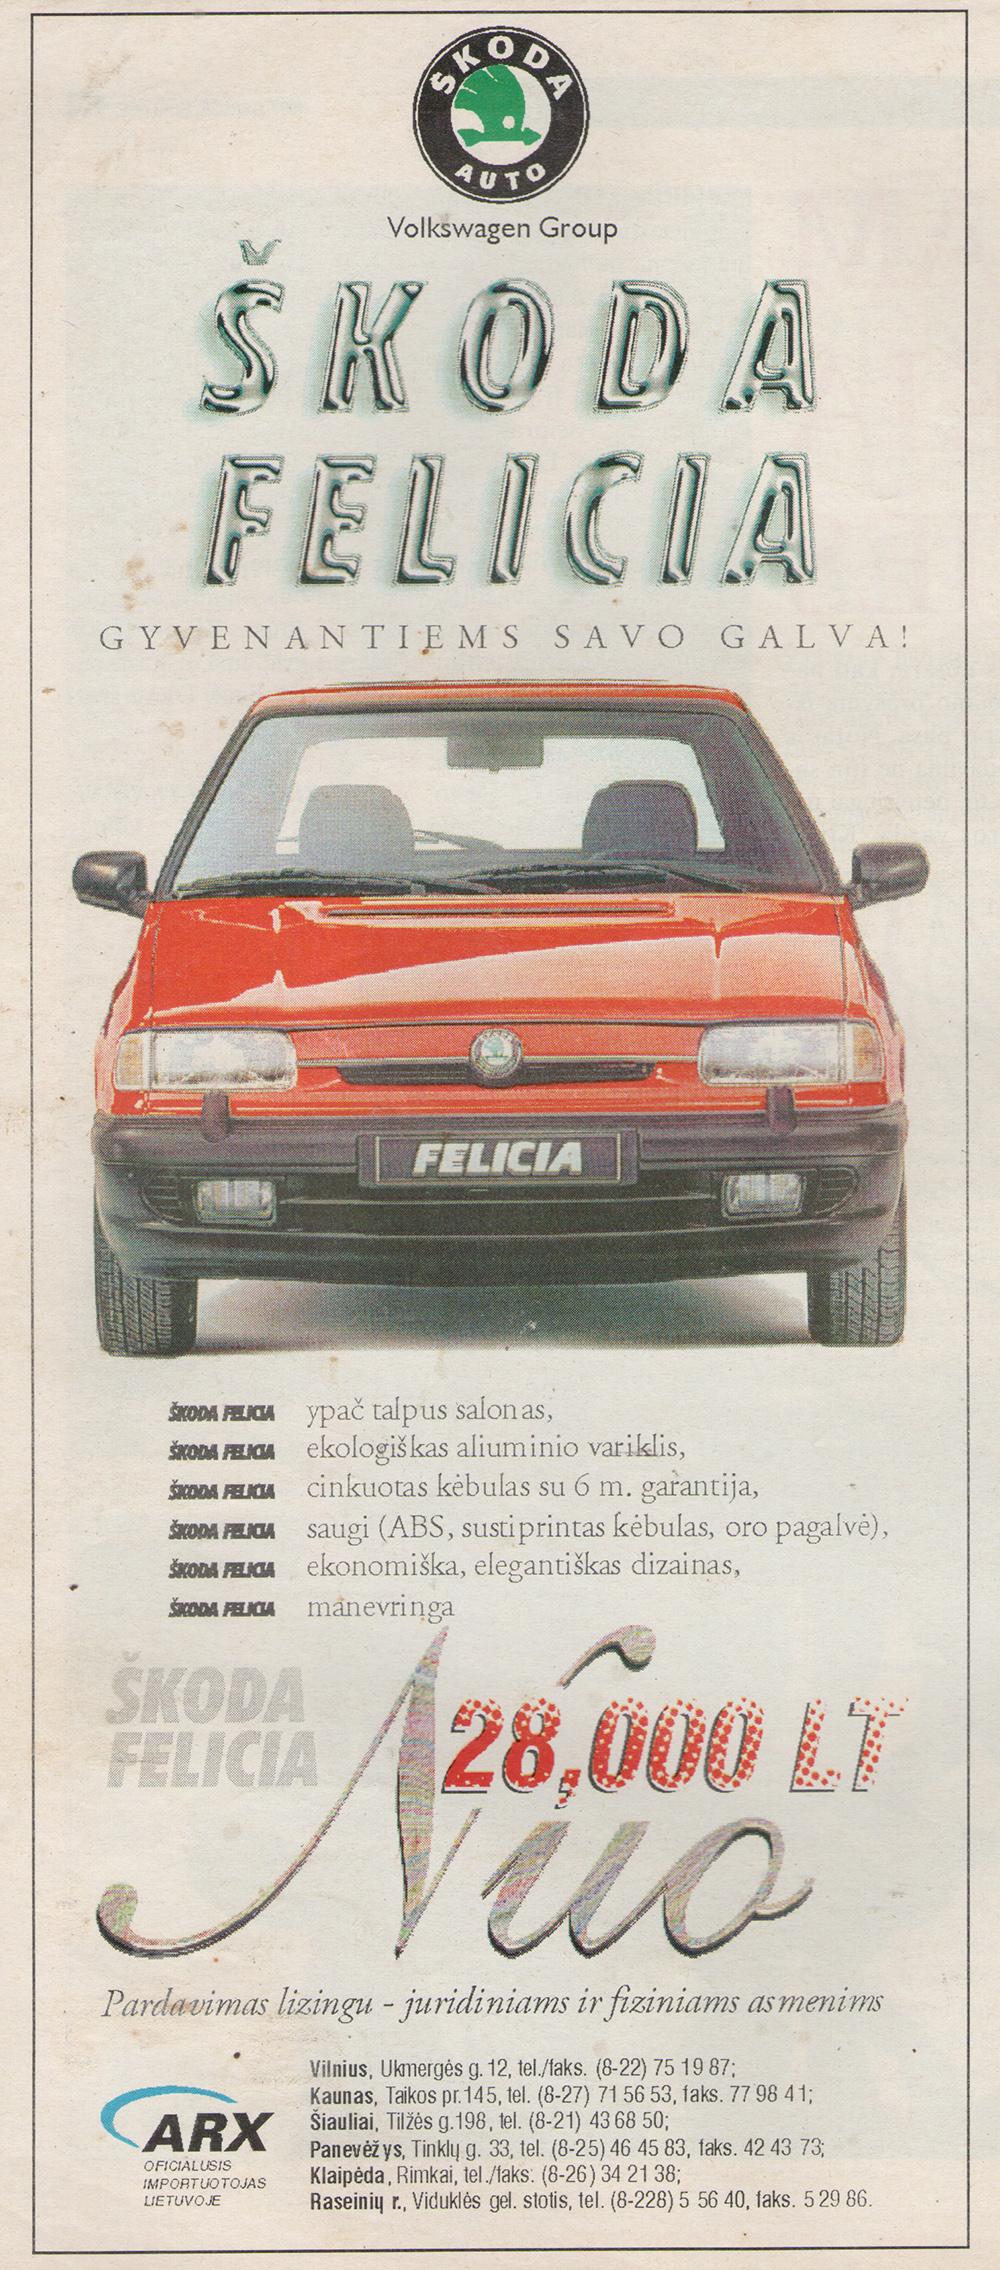 Škoda Felicia - Gyvenantiems savo galva!